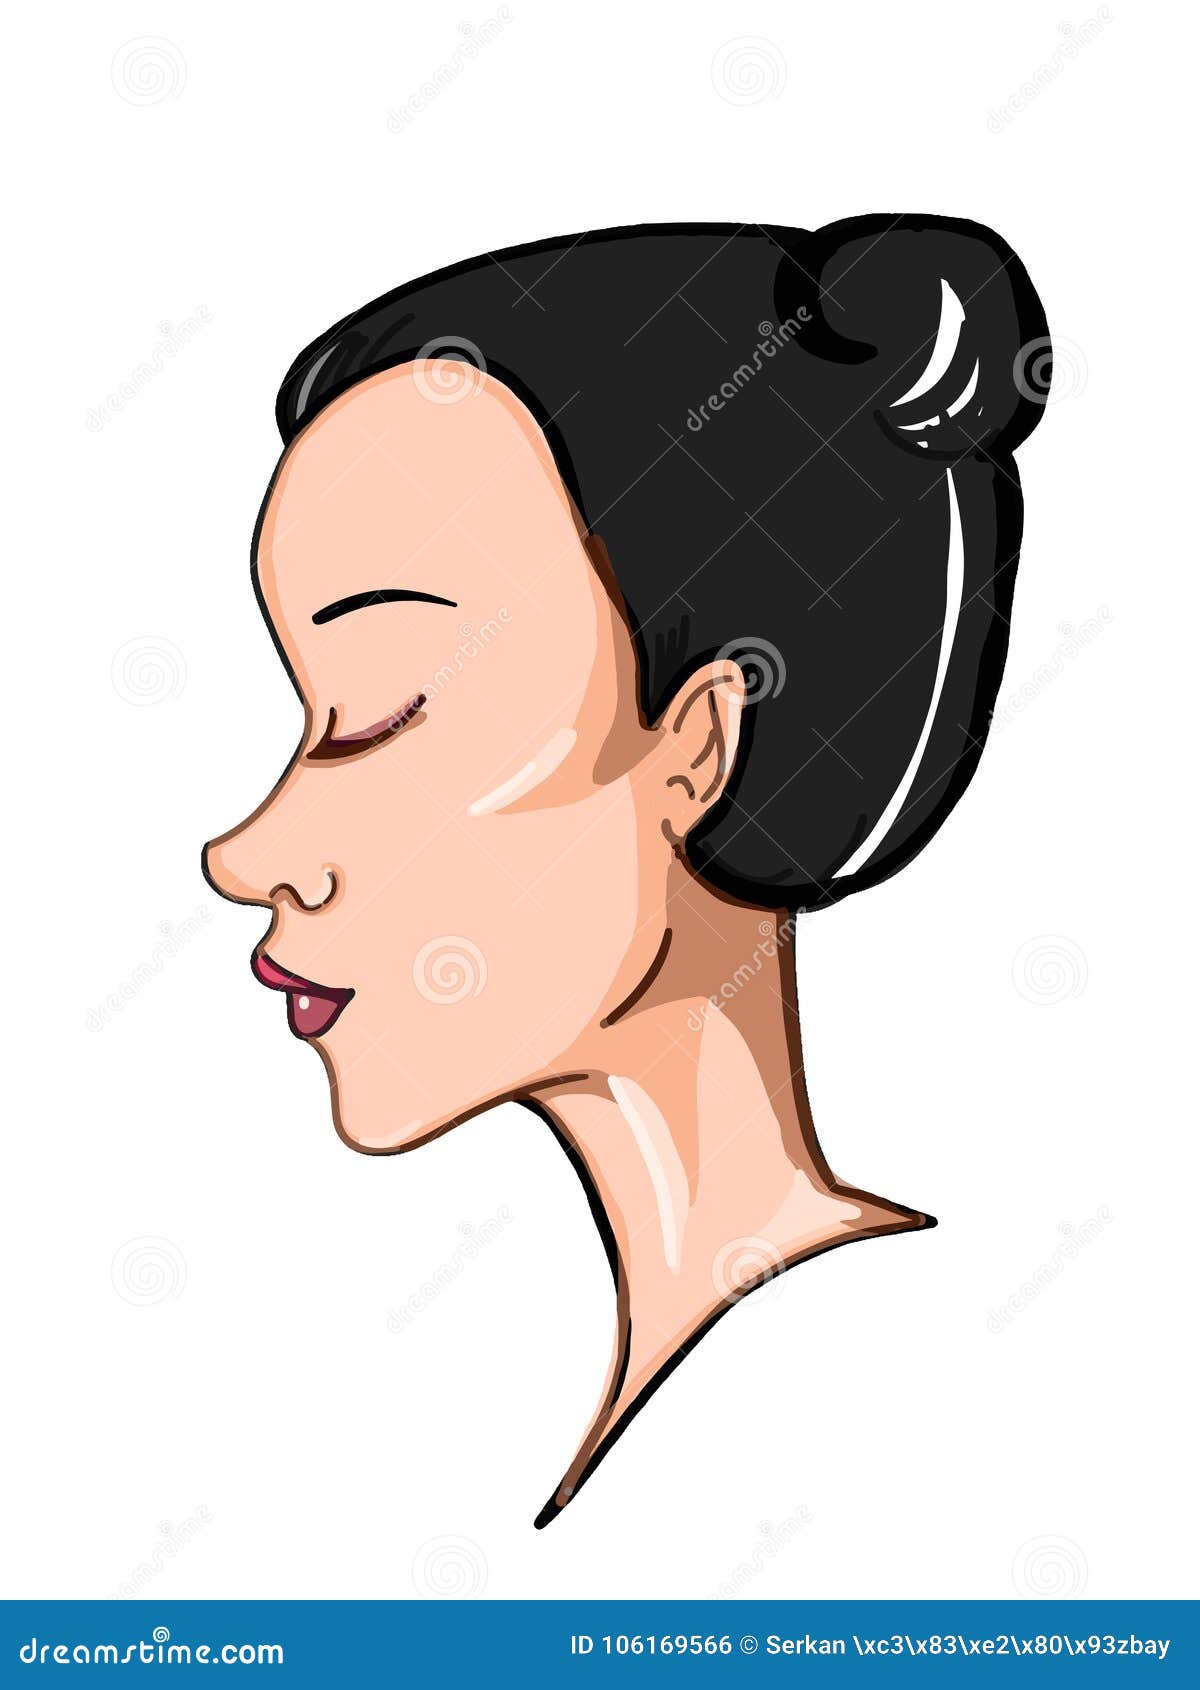 Fondo Del Blanco Del Ejemplo Del Dibujo Del Dibujo Del Ejemplo Del Perfil  De La Cara De La Mujer Stock de ilustración - Ilustración de pelo, pista:  106169566